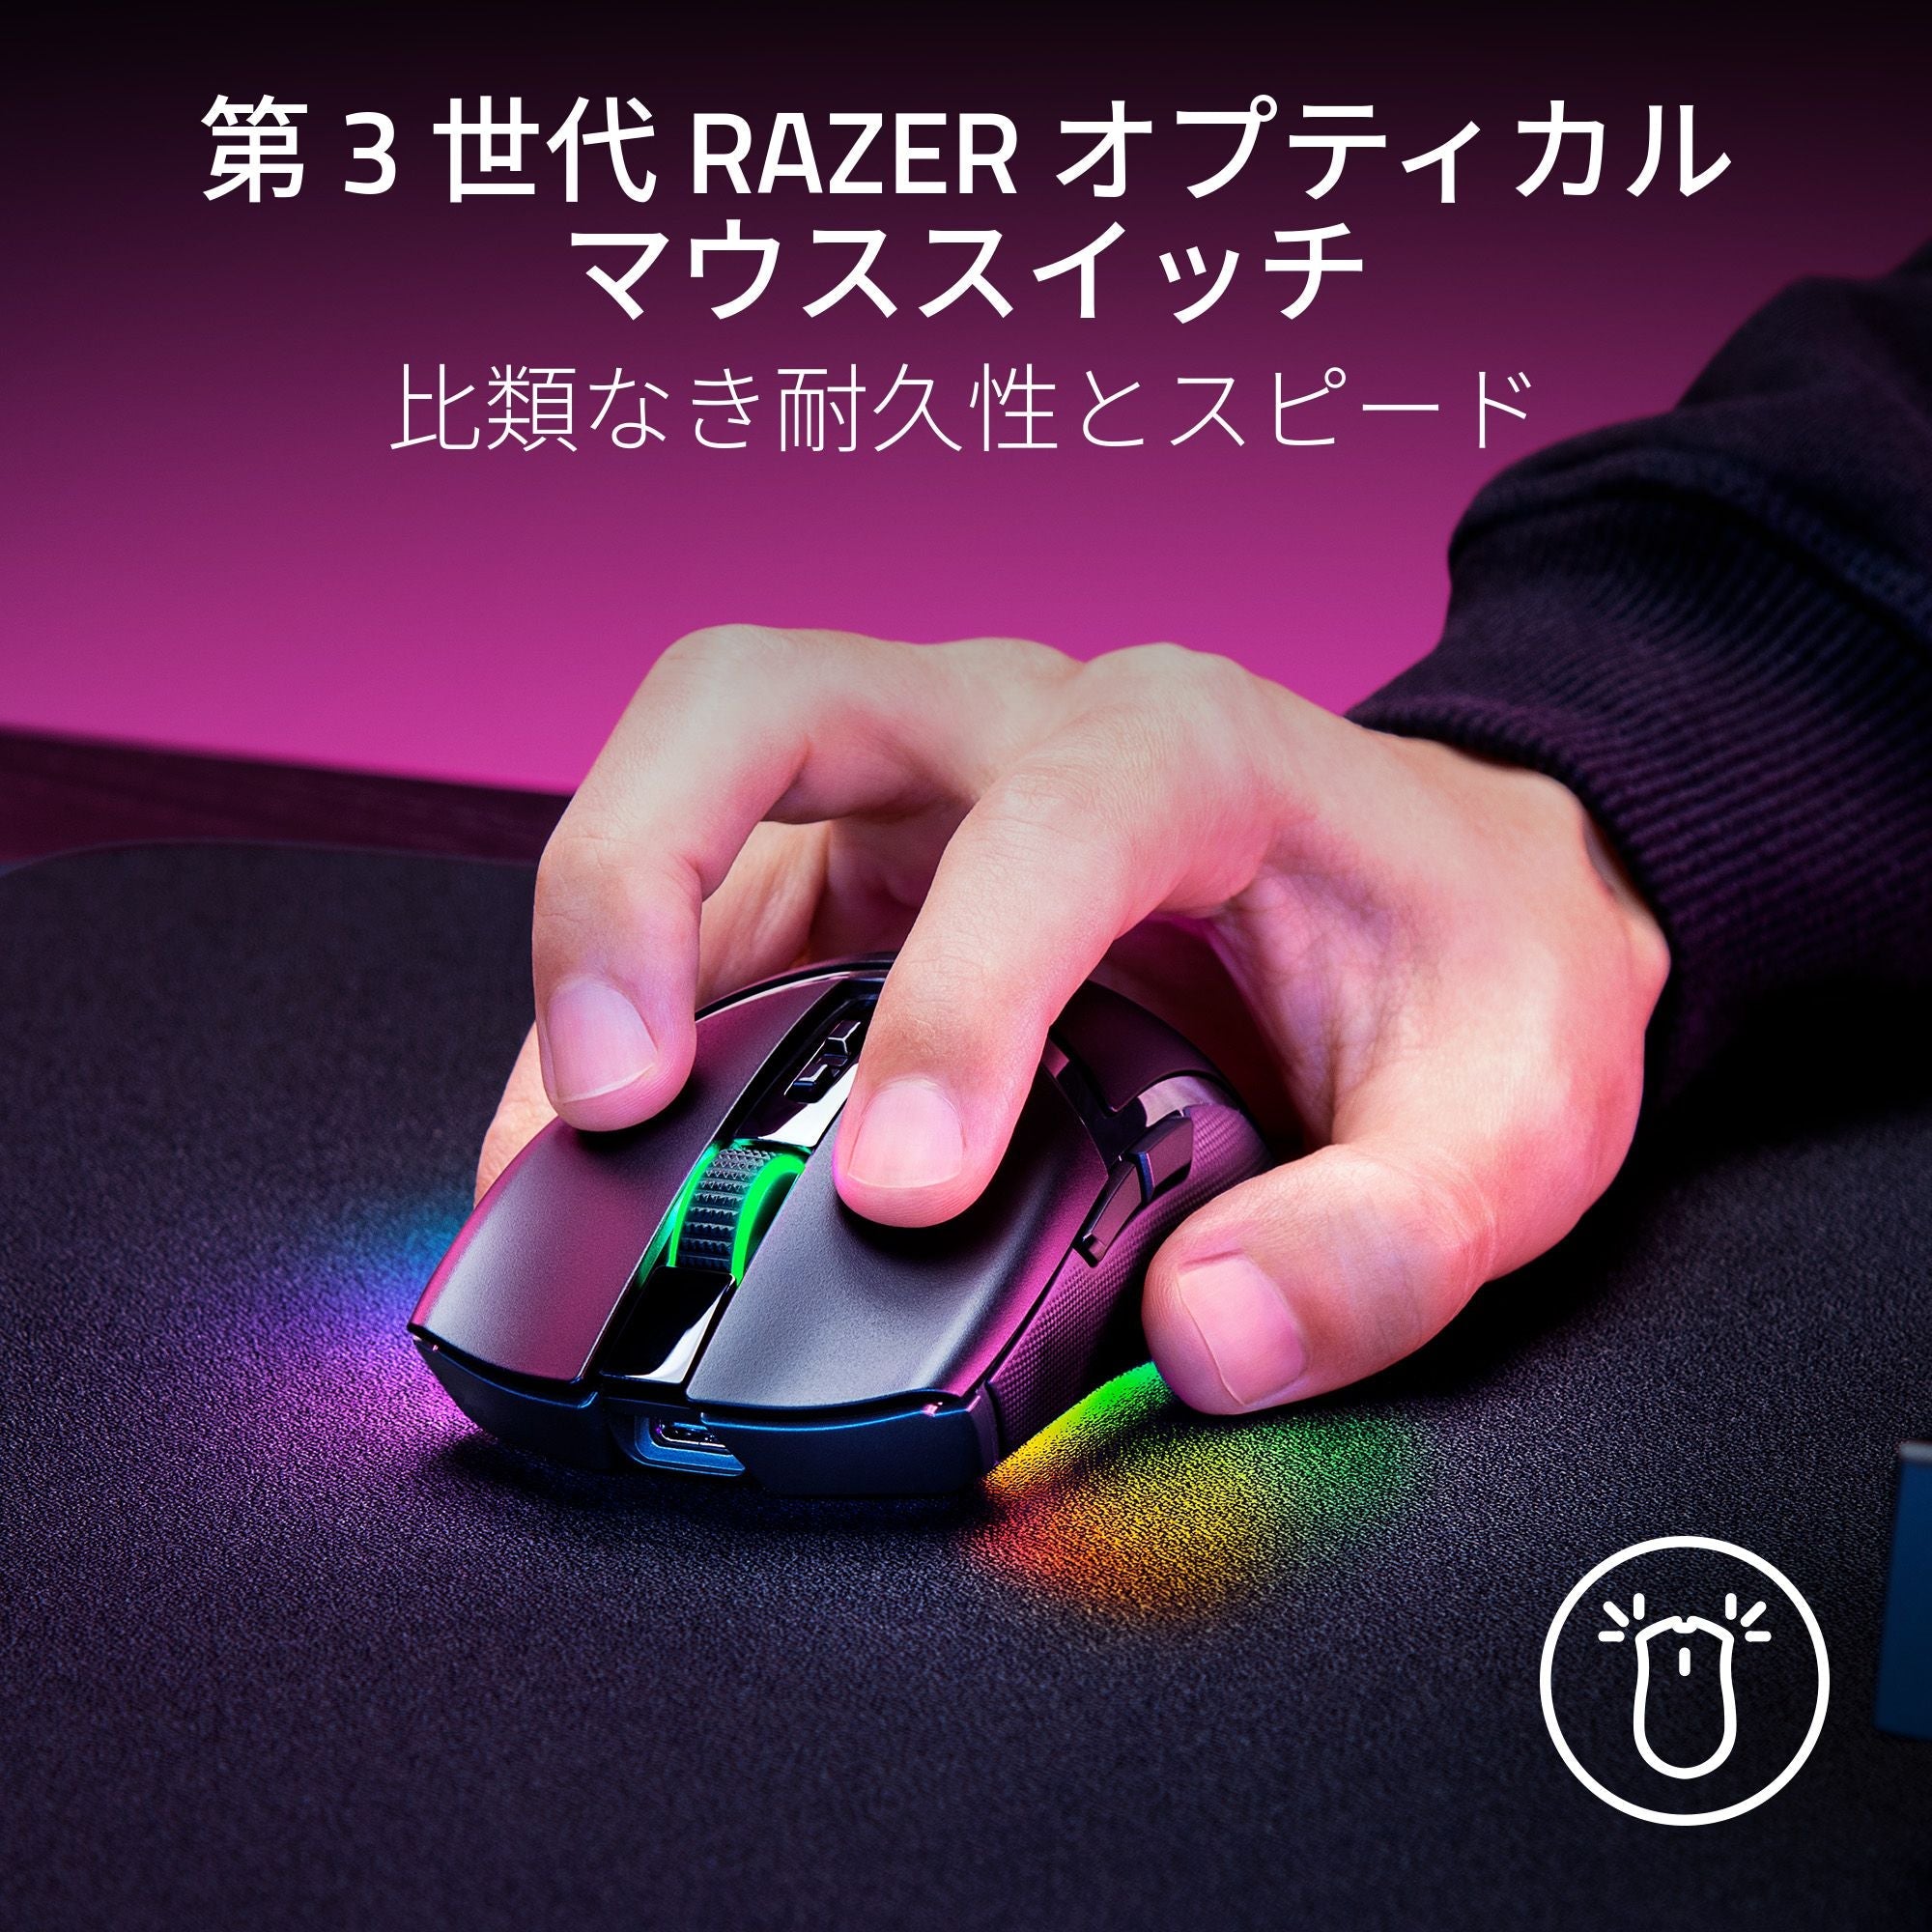 Razer Cobra Pro レイザー コブラ プロ